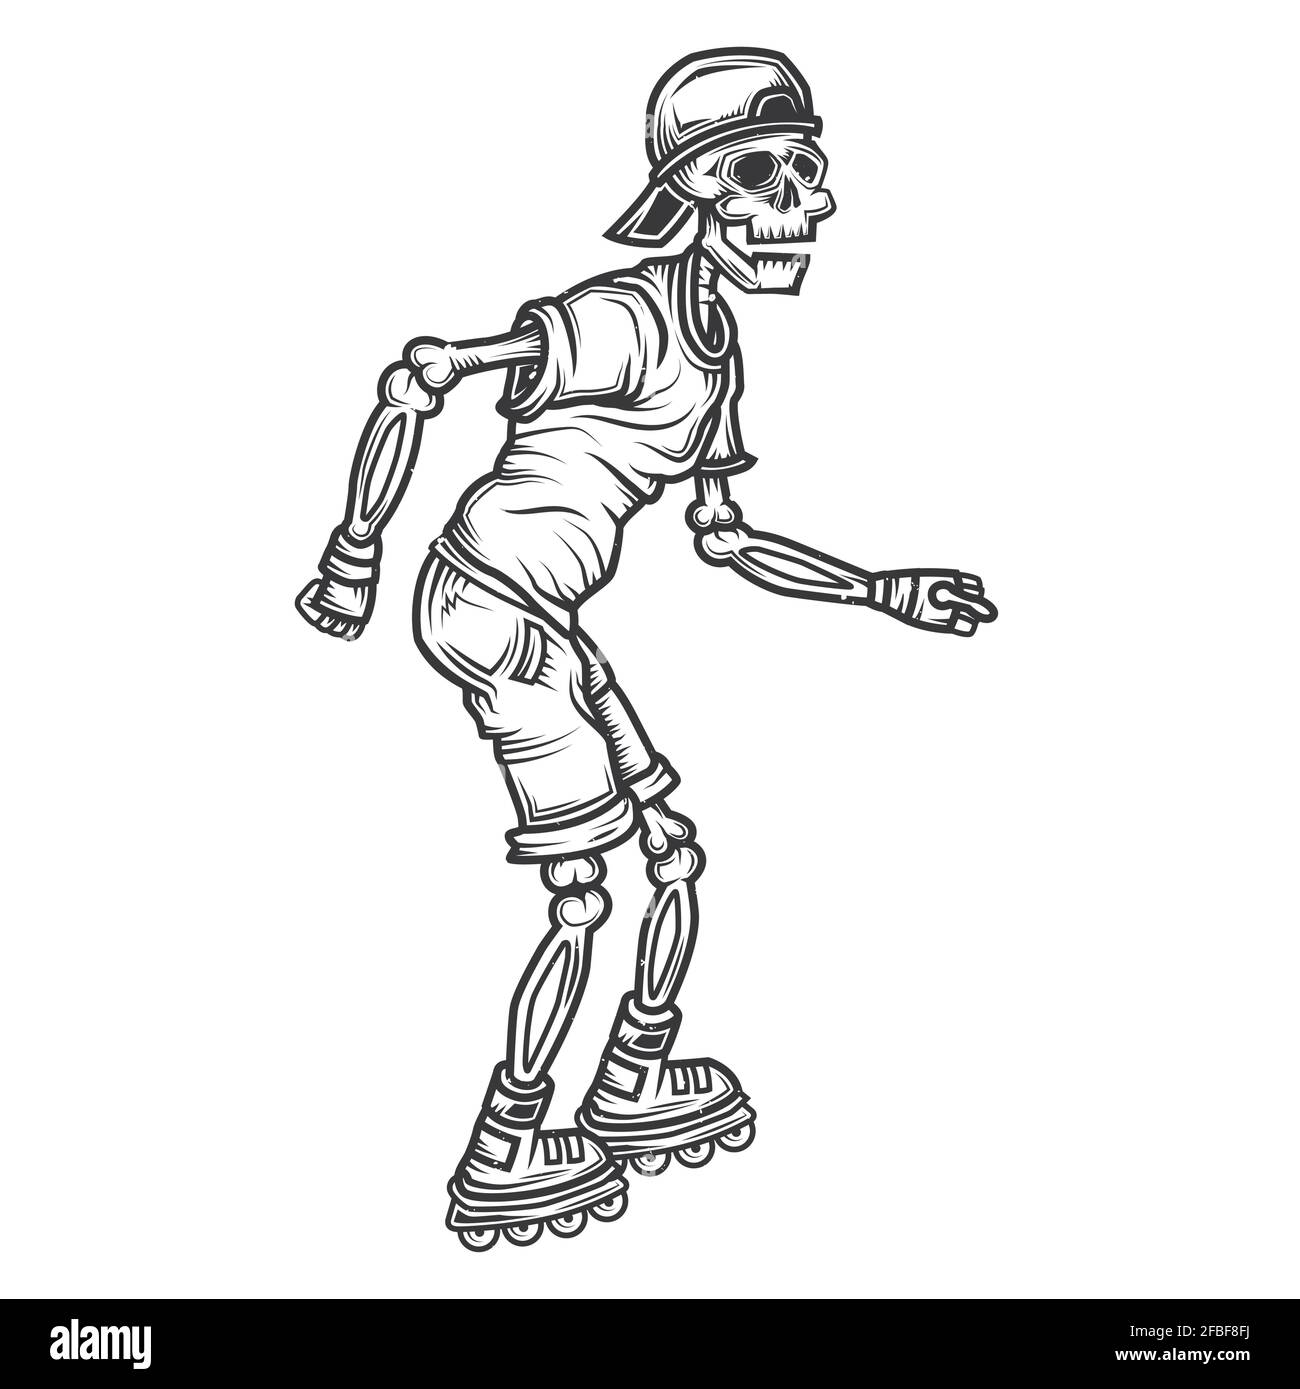 Emblème avec illustration du squelette sur patins à roulettes Illustration de Vecteur